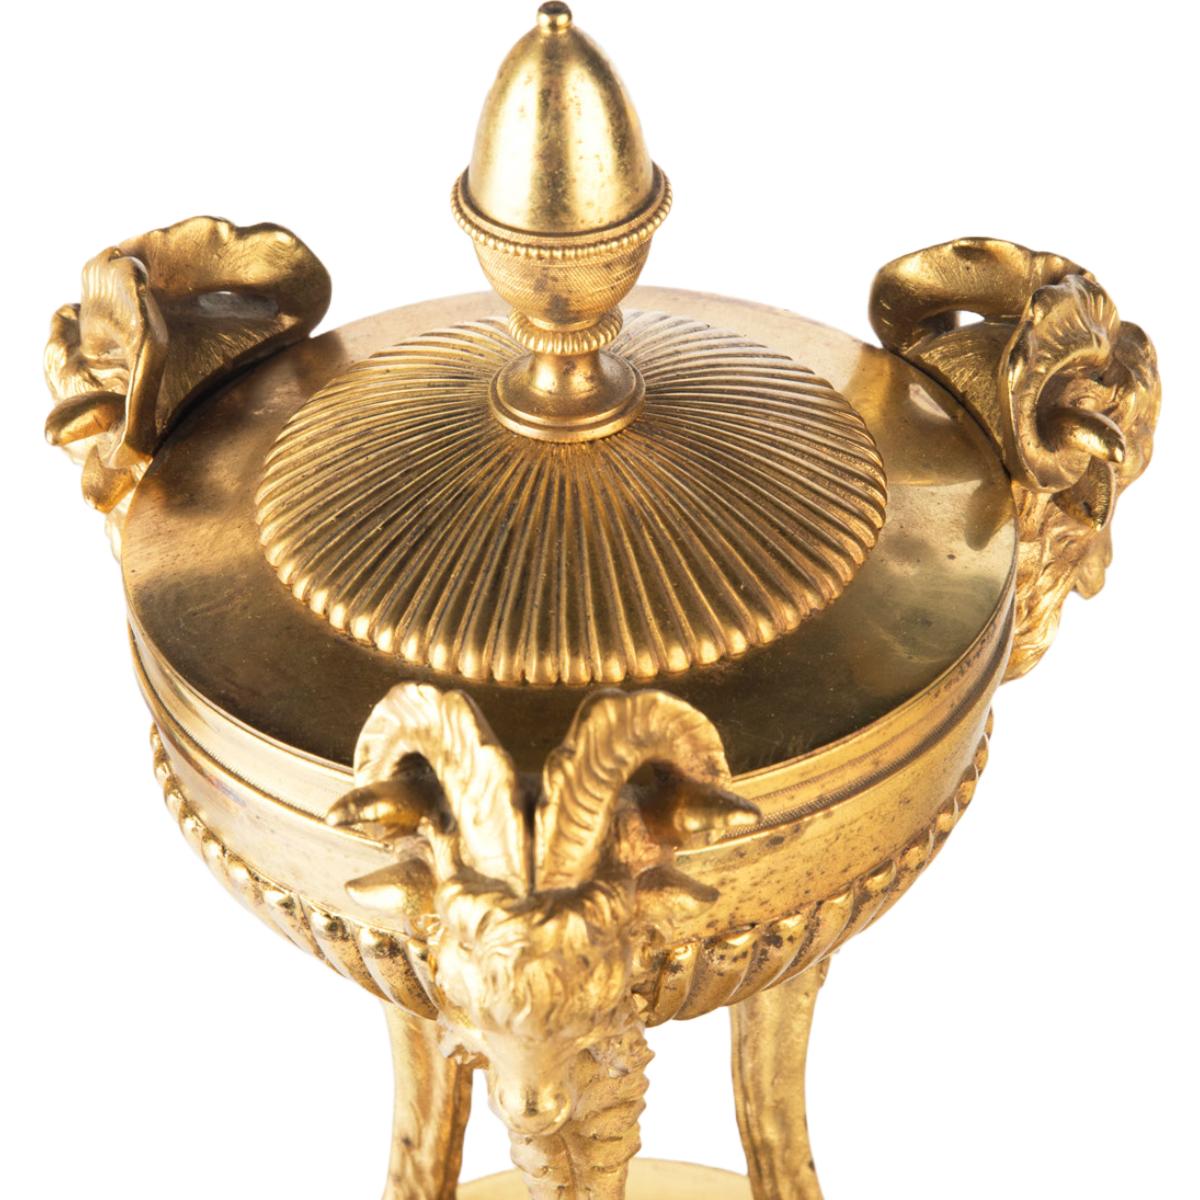 Ein Paar Vasen aus vergoldeter Bronze im klassischen Regency-Stil, jede in Form einer flachen Schale mit Eichelknauf, die von drei Ziegenköpfen mit Hufen getragen wird, auf einer kurzen Säule aus schwarzem und weißem Marmor, die auf einem Sockel aus